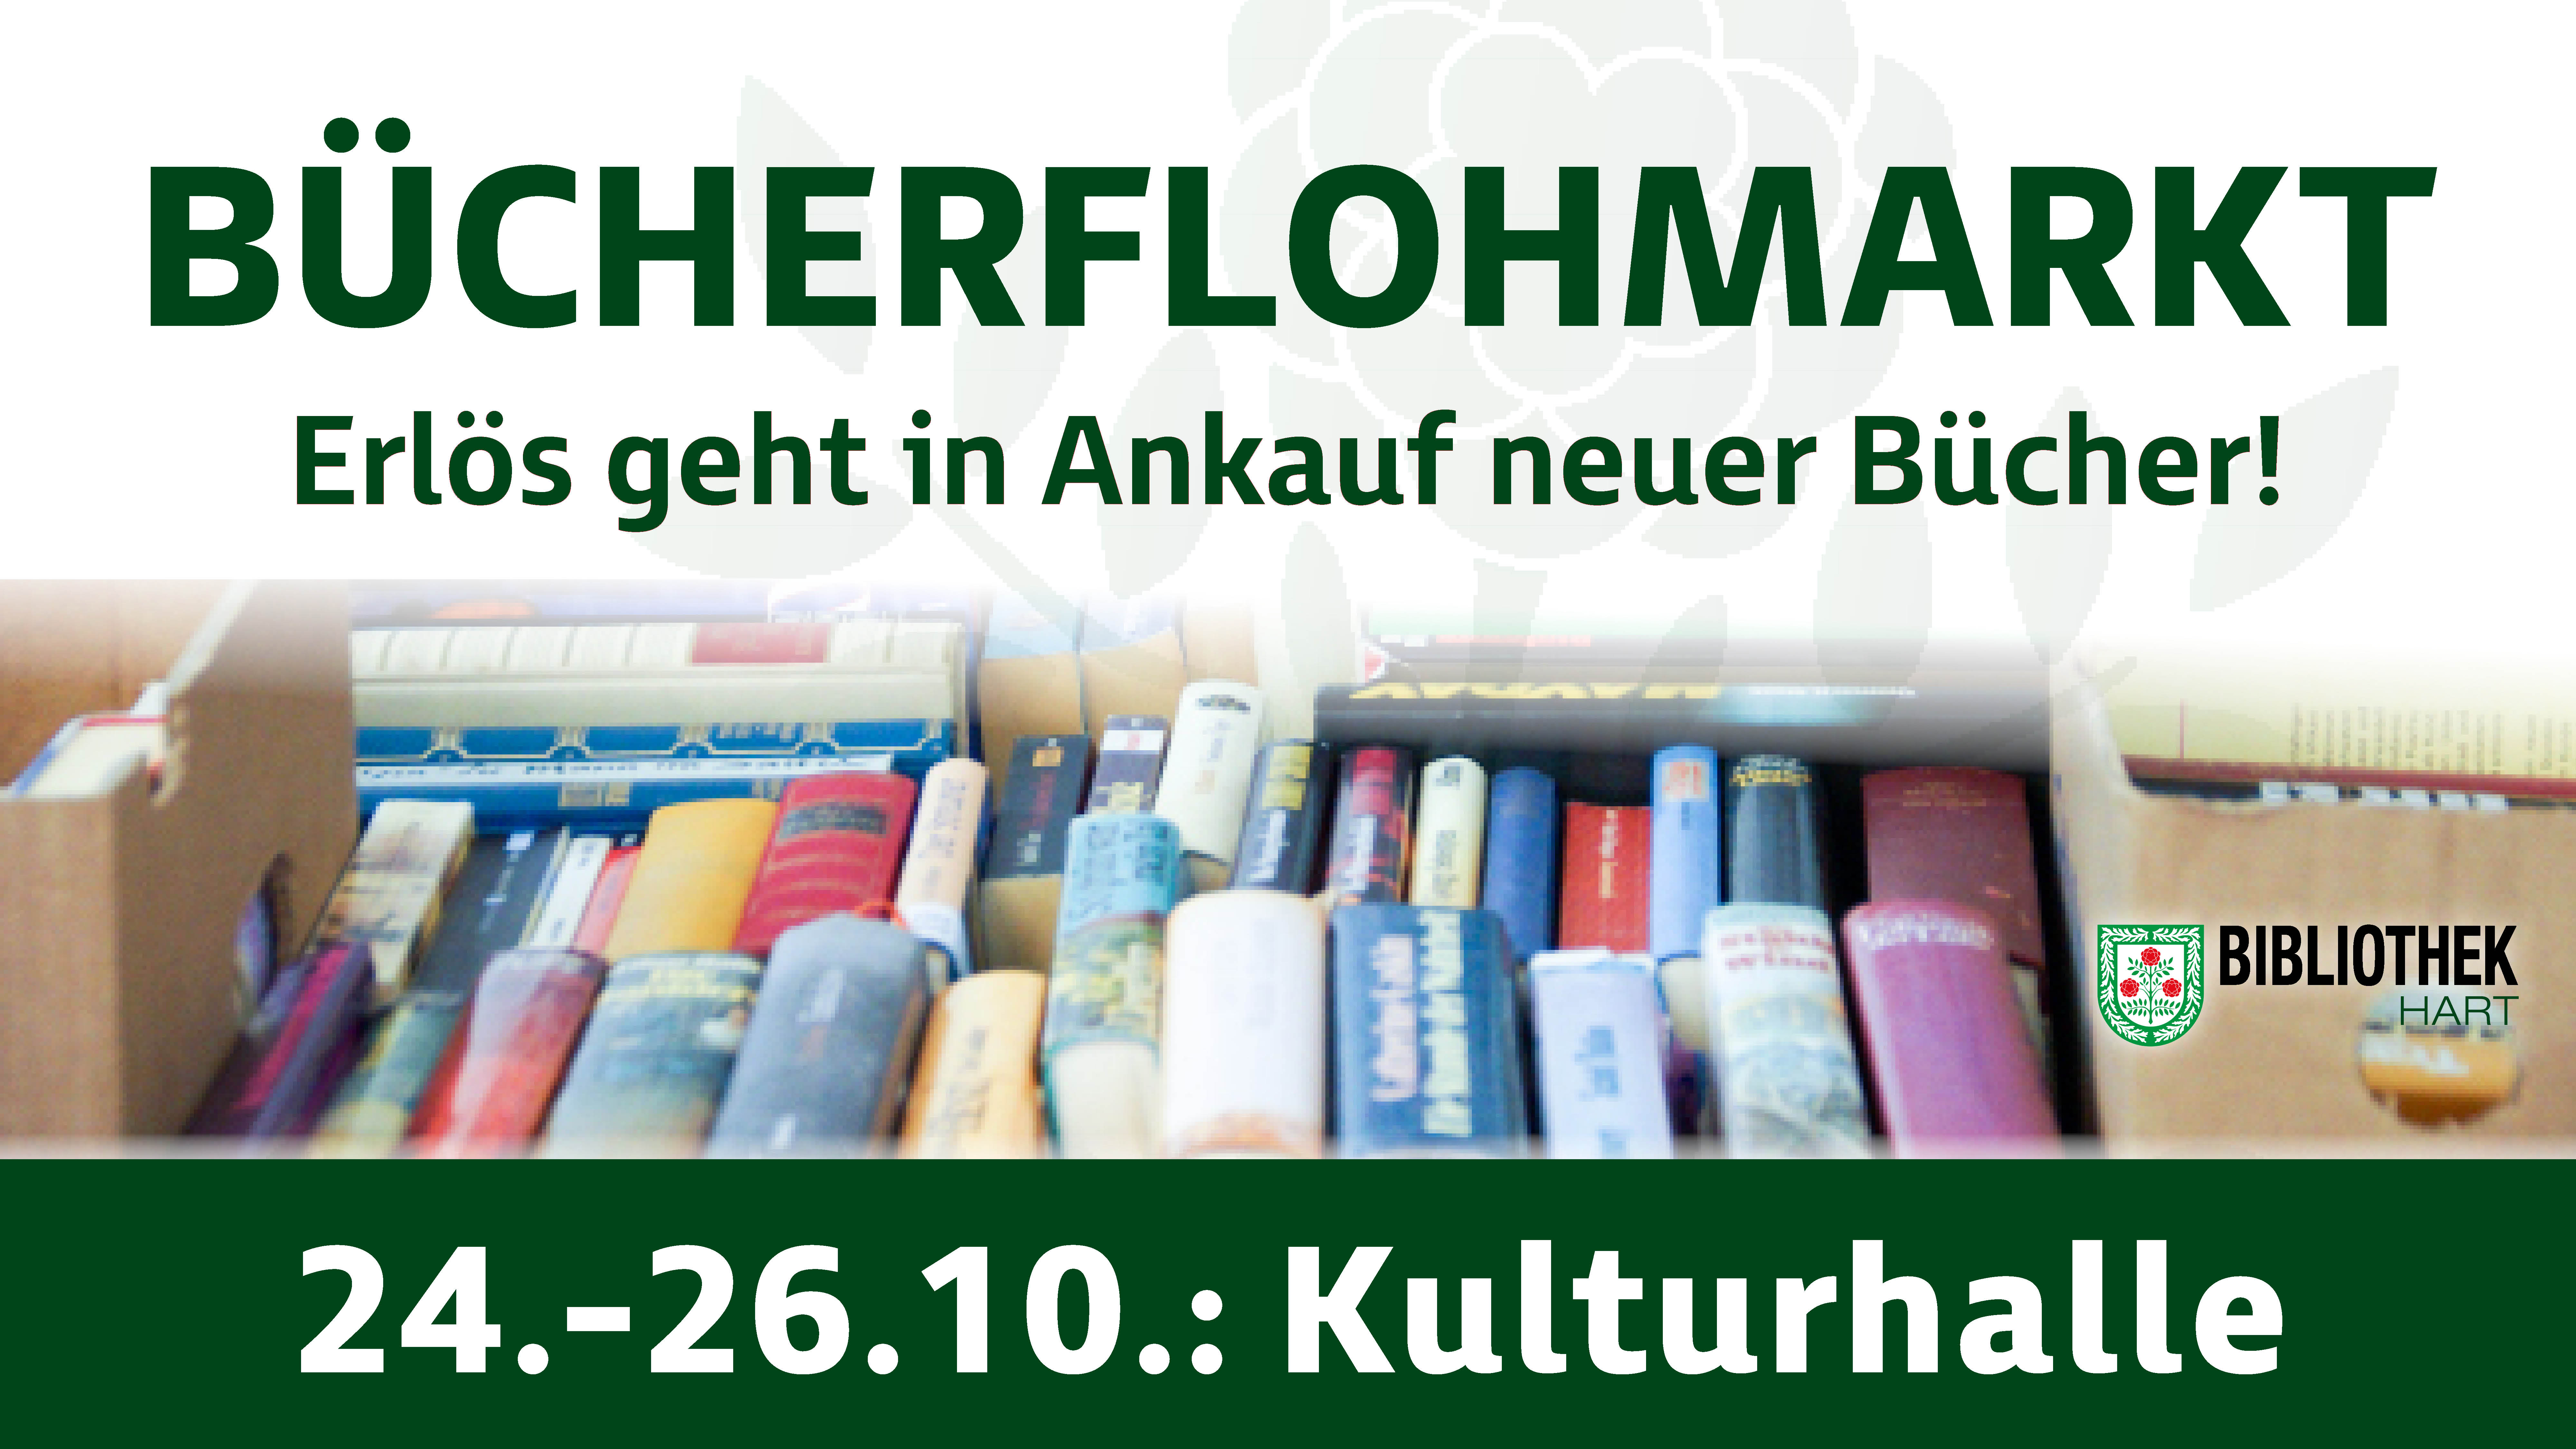 20201008 Bücherflohmarkt facebook event 019-3.jpg